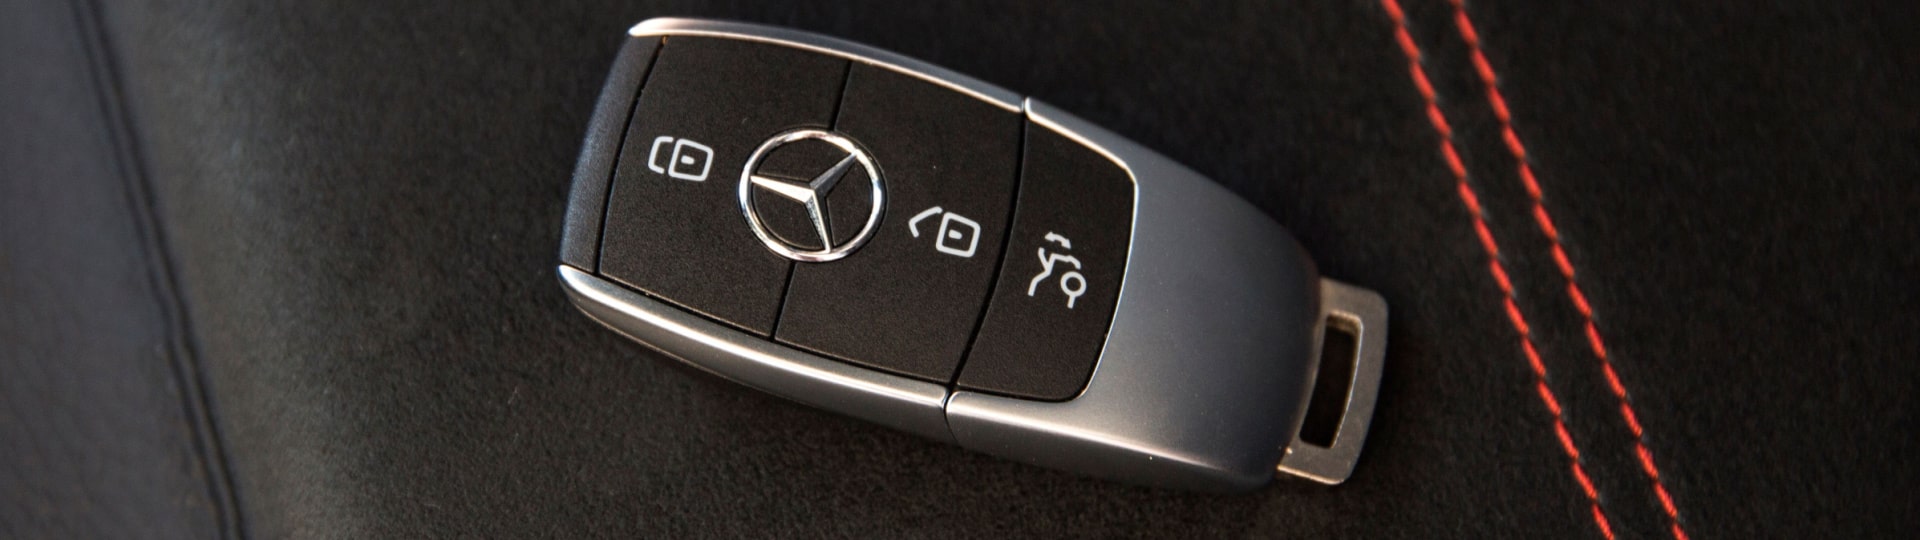 Mercedes-Benz ve čtvrtletí zvýšil provozní zisk